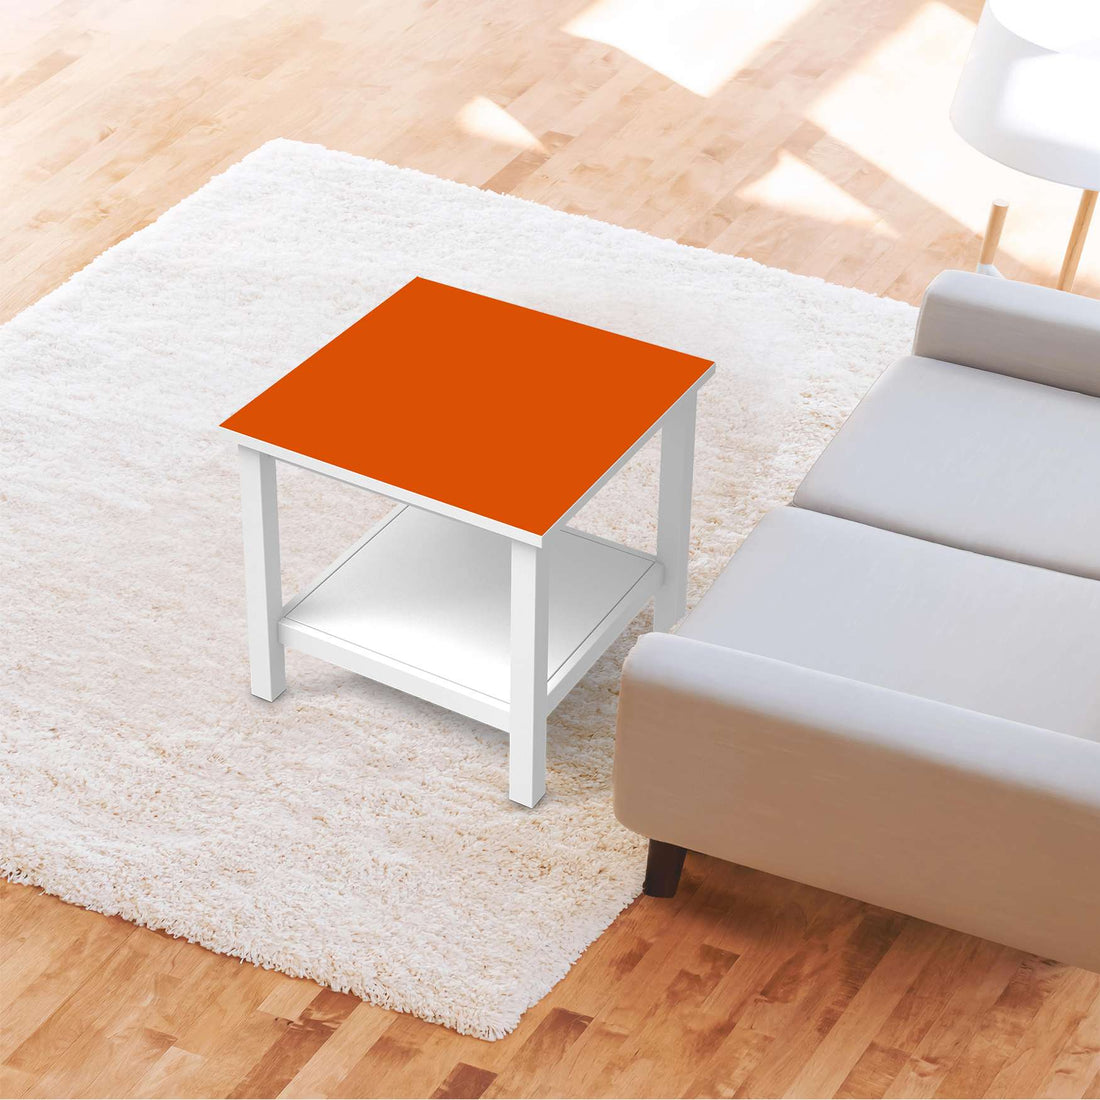 Möbel Klebefolie Orange Dark - IKEA Hemnes Beistelltisch 55x55 cm - Wohnzimmer